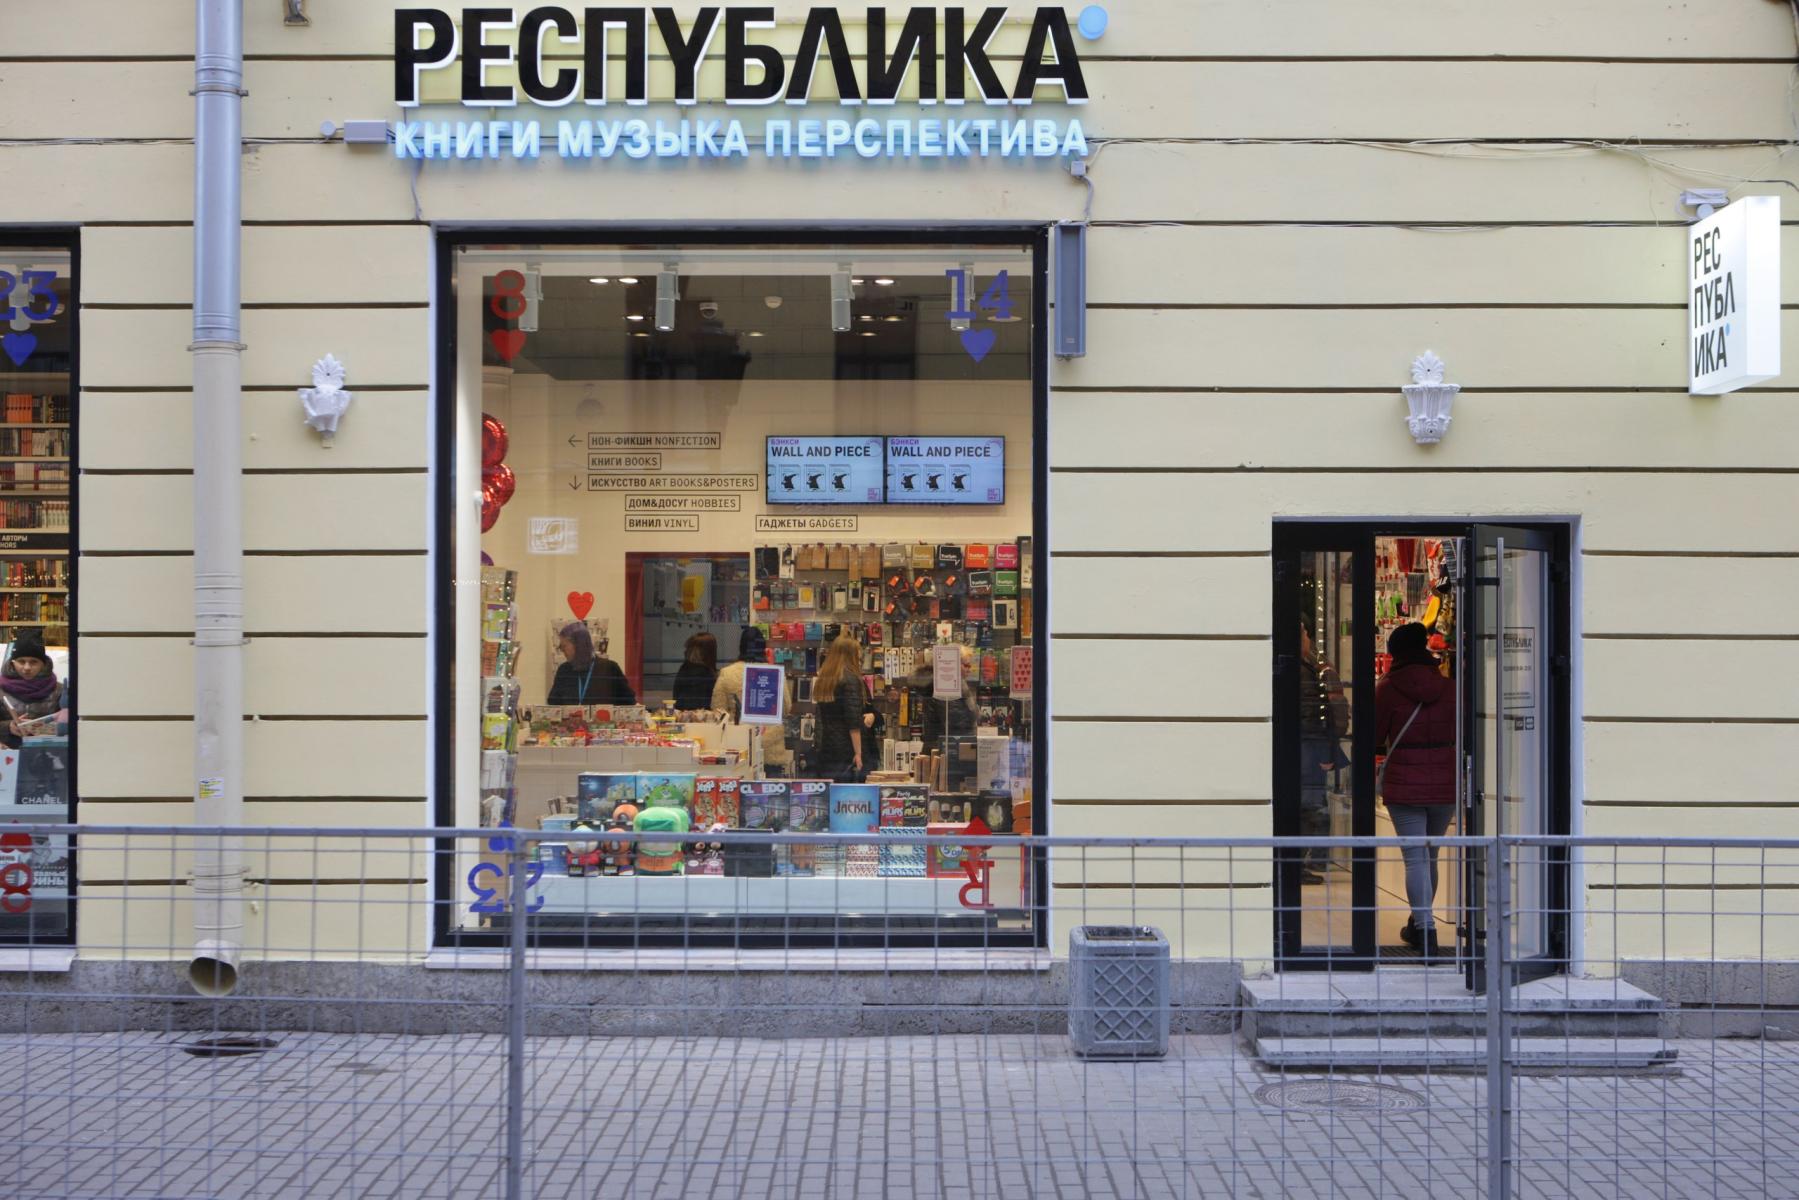 Сеть магазинов «Республика» сообщила о банкротстве из-за COVID-19, фото